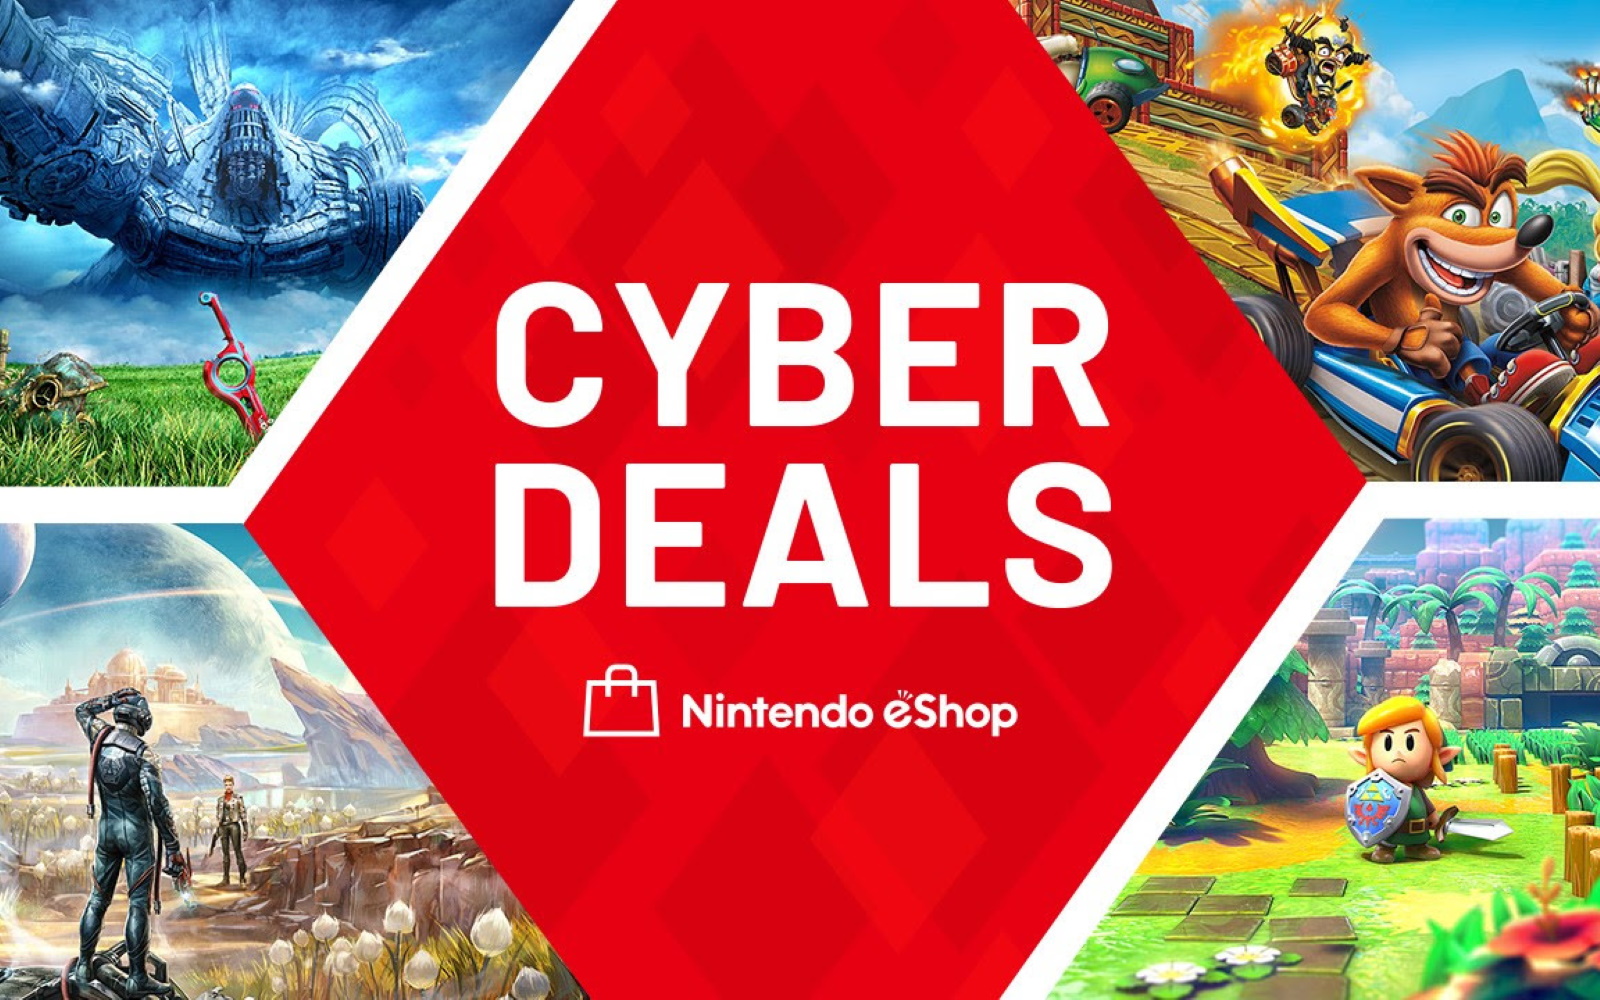 Nintendo eShop Cyber Deals